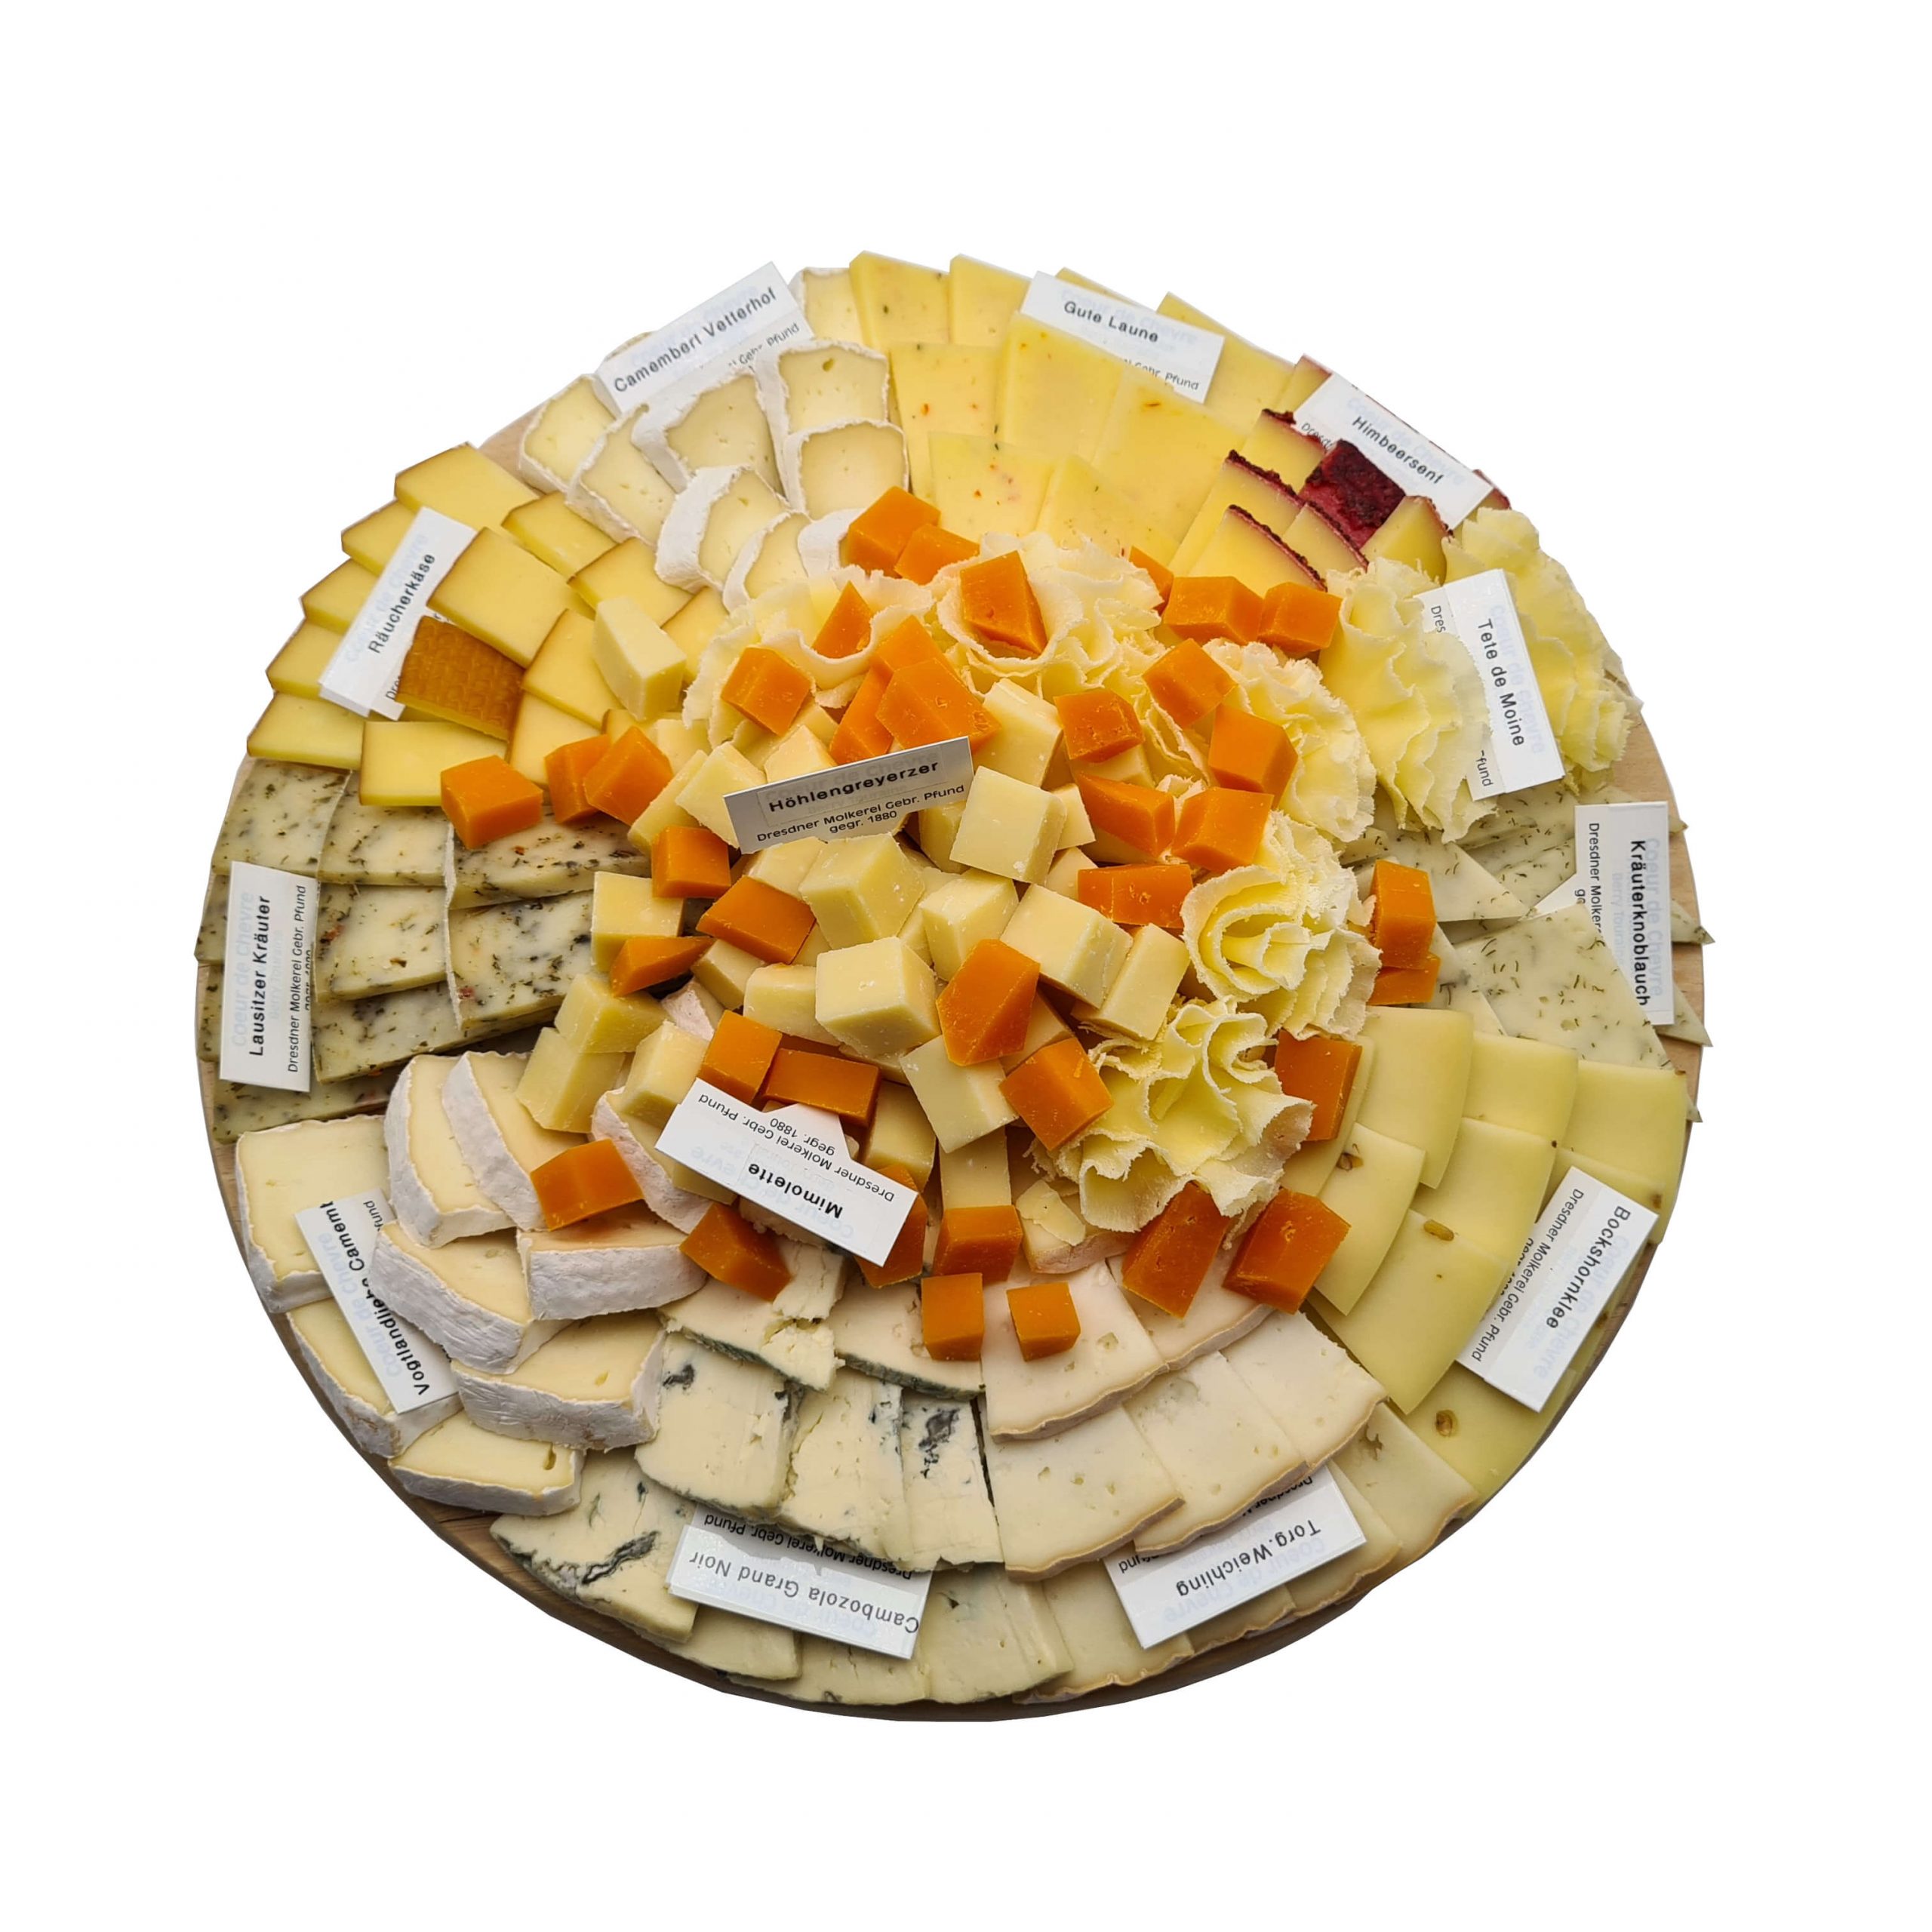 Bestellung von Käseplatten bei der Pfunds Molkerei - große Variante